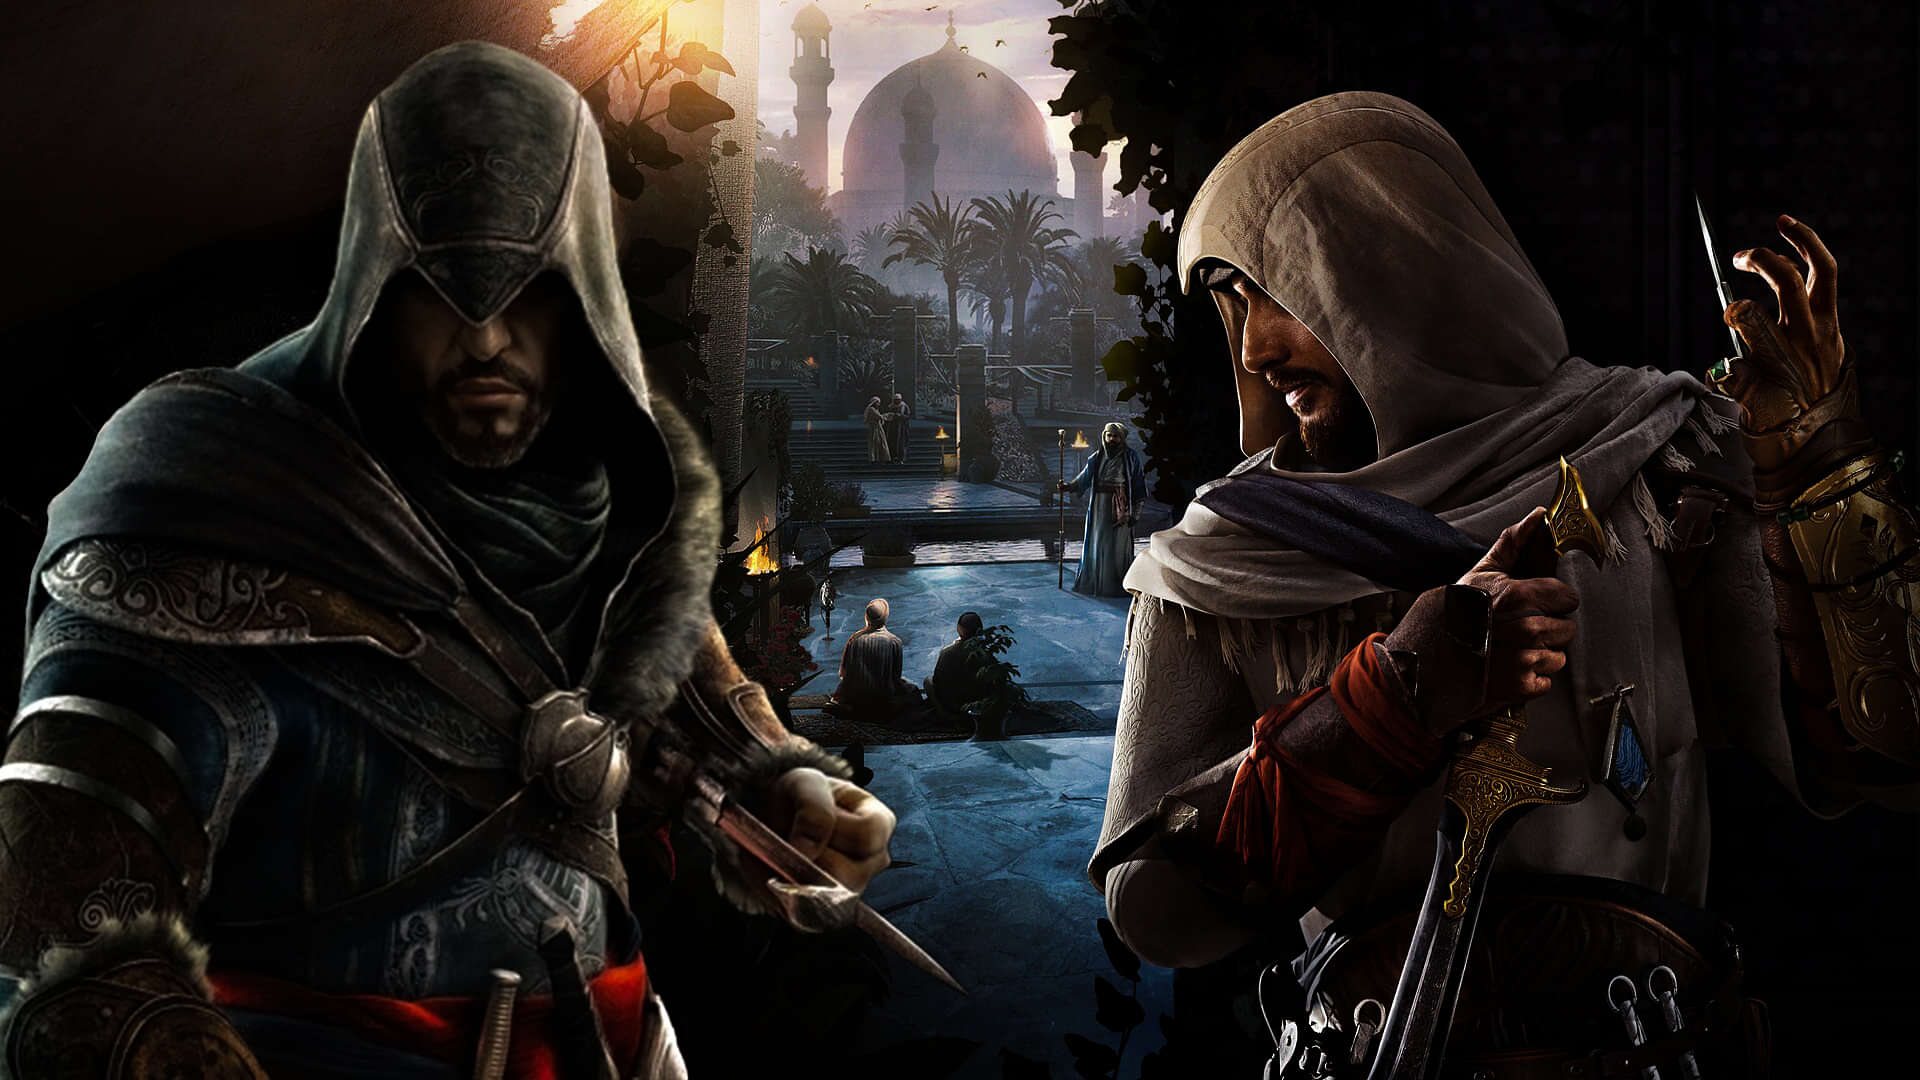 Ezio revelations outfit symbols : r/assassinscreed